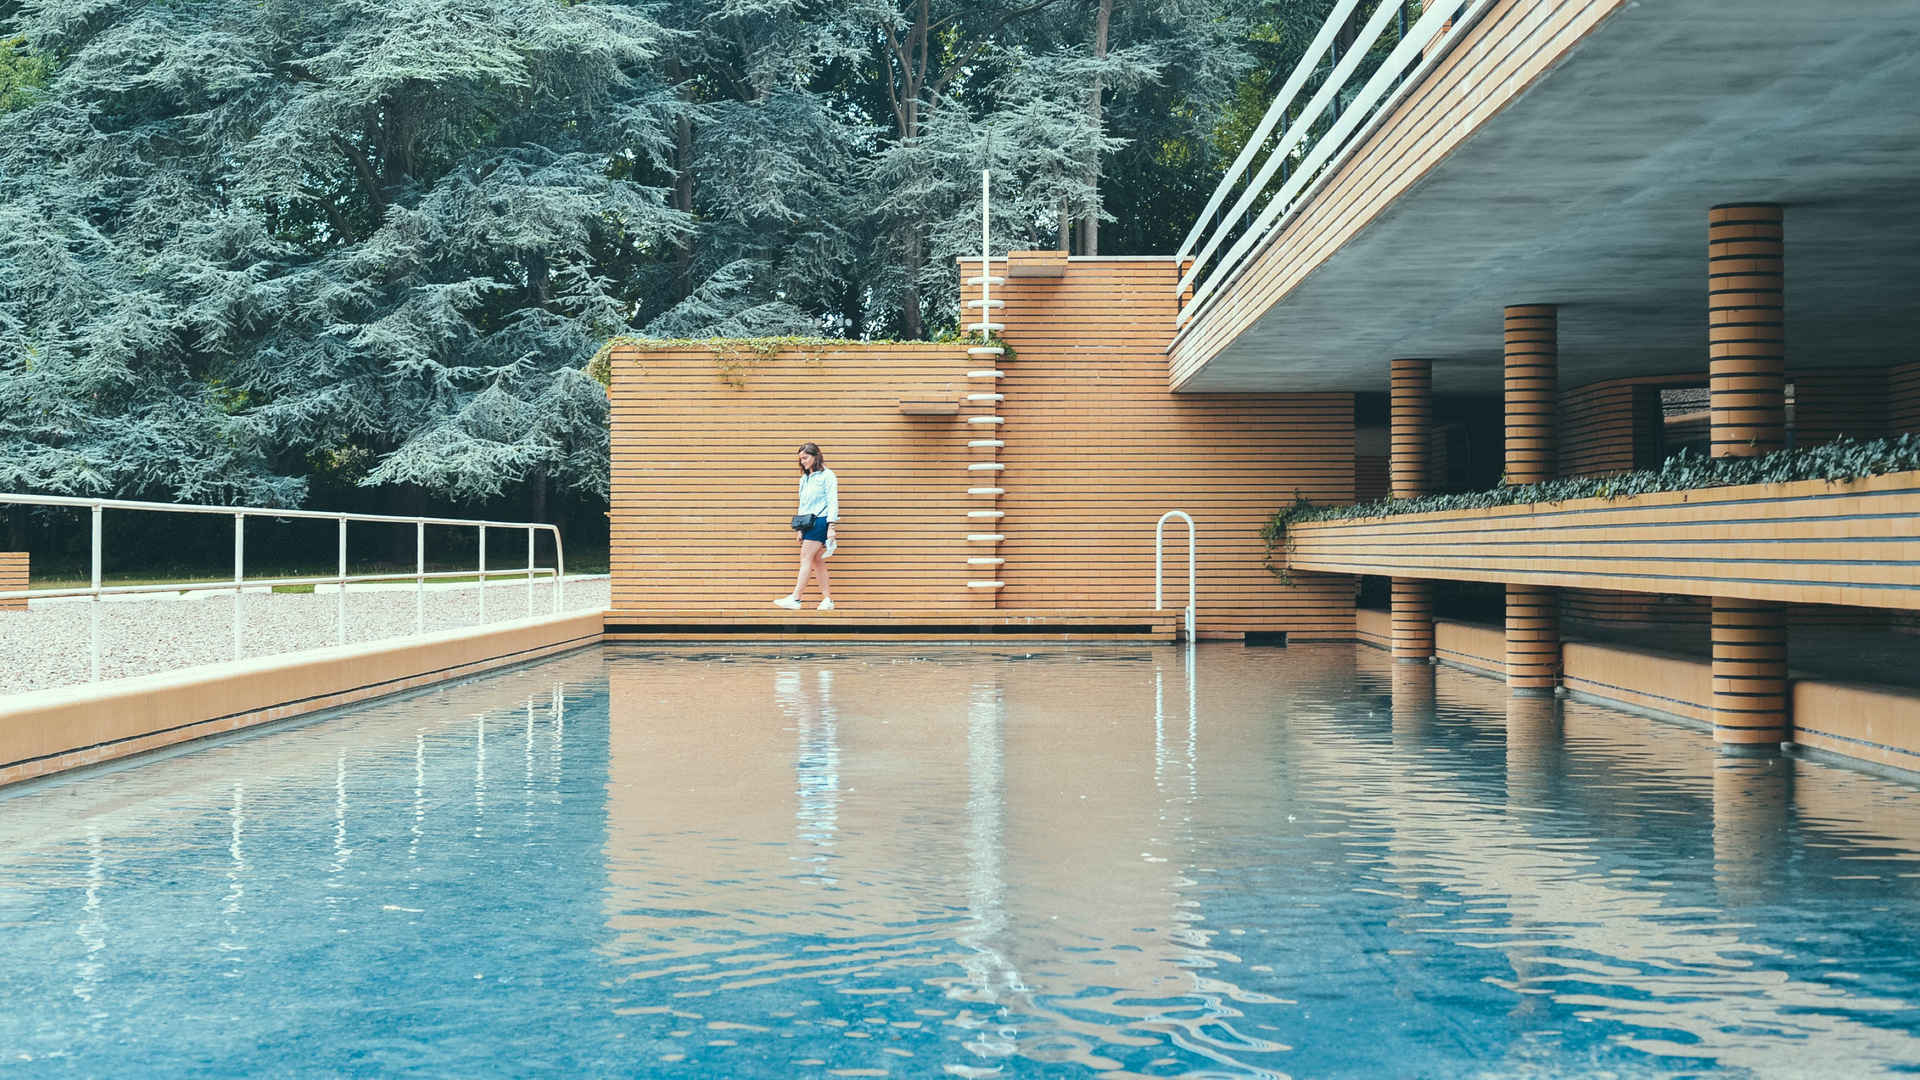 萨摩亚度假村的露天游泳池 - 免费可商用图片 - cc0.cn